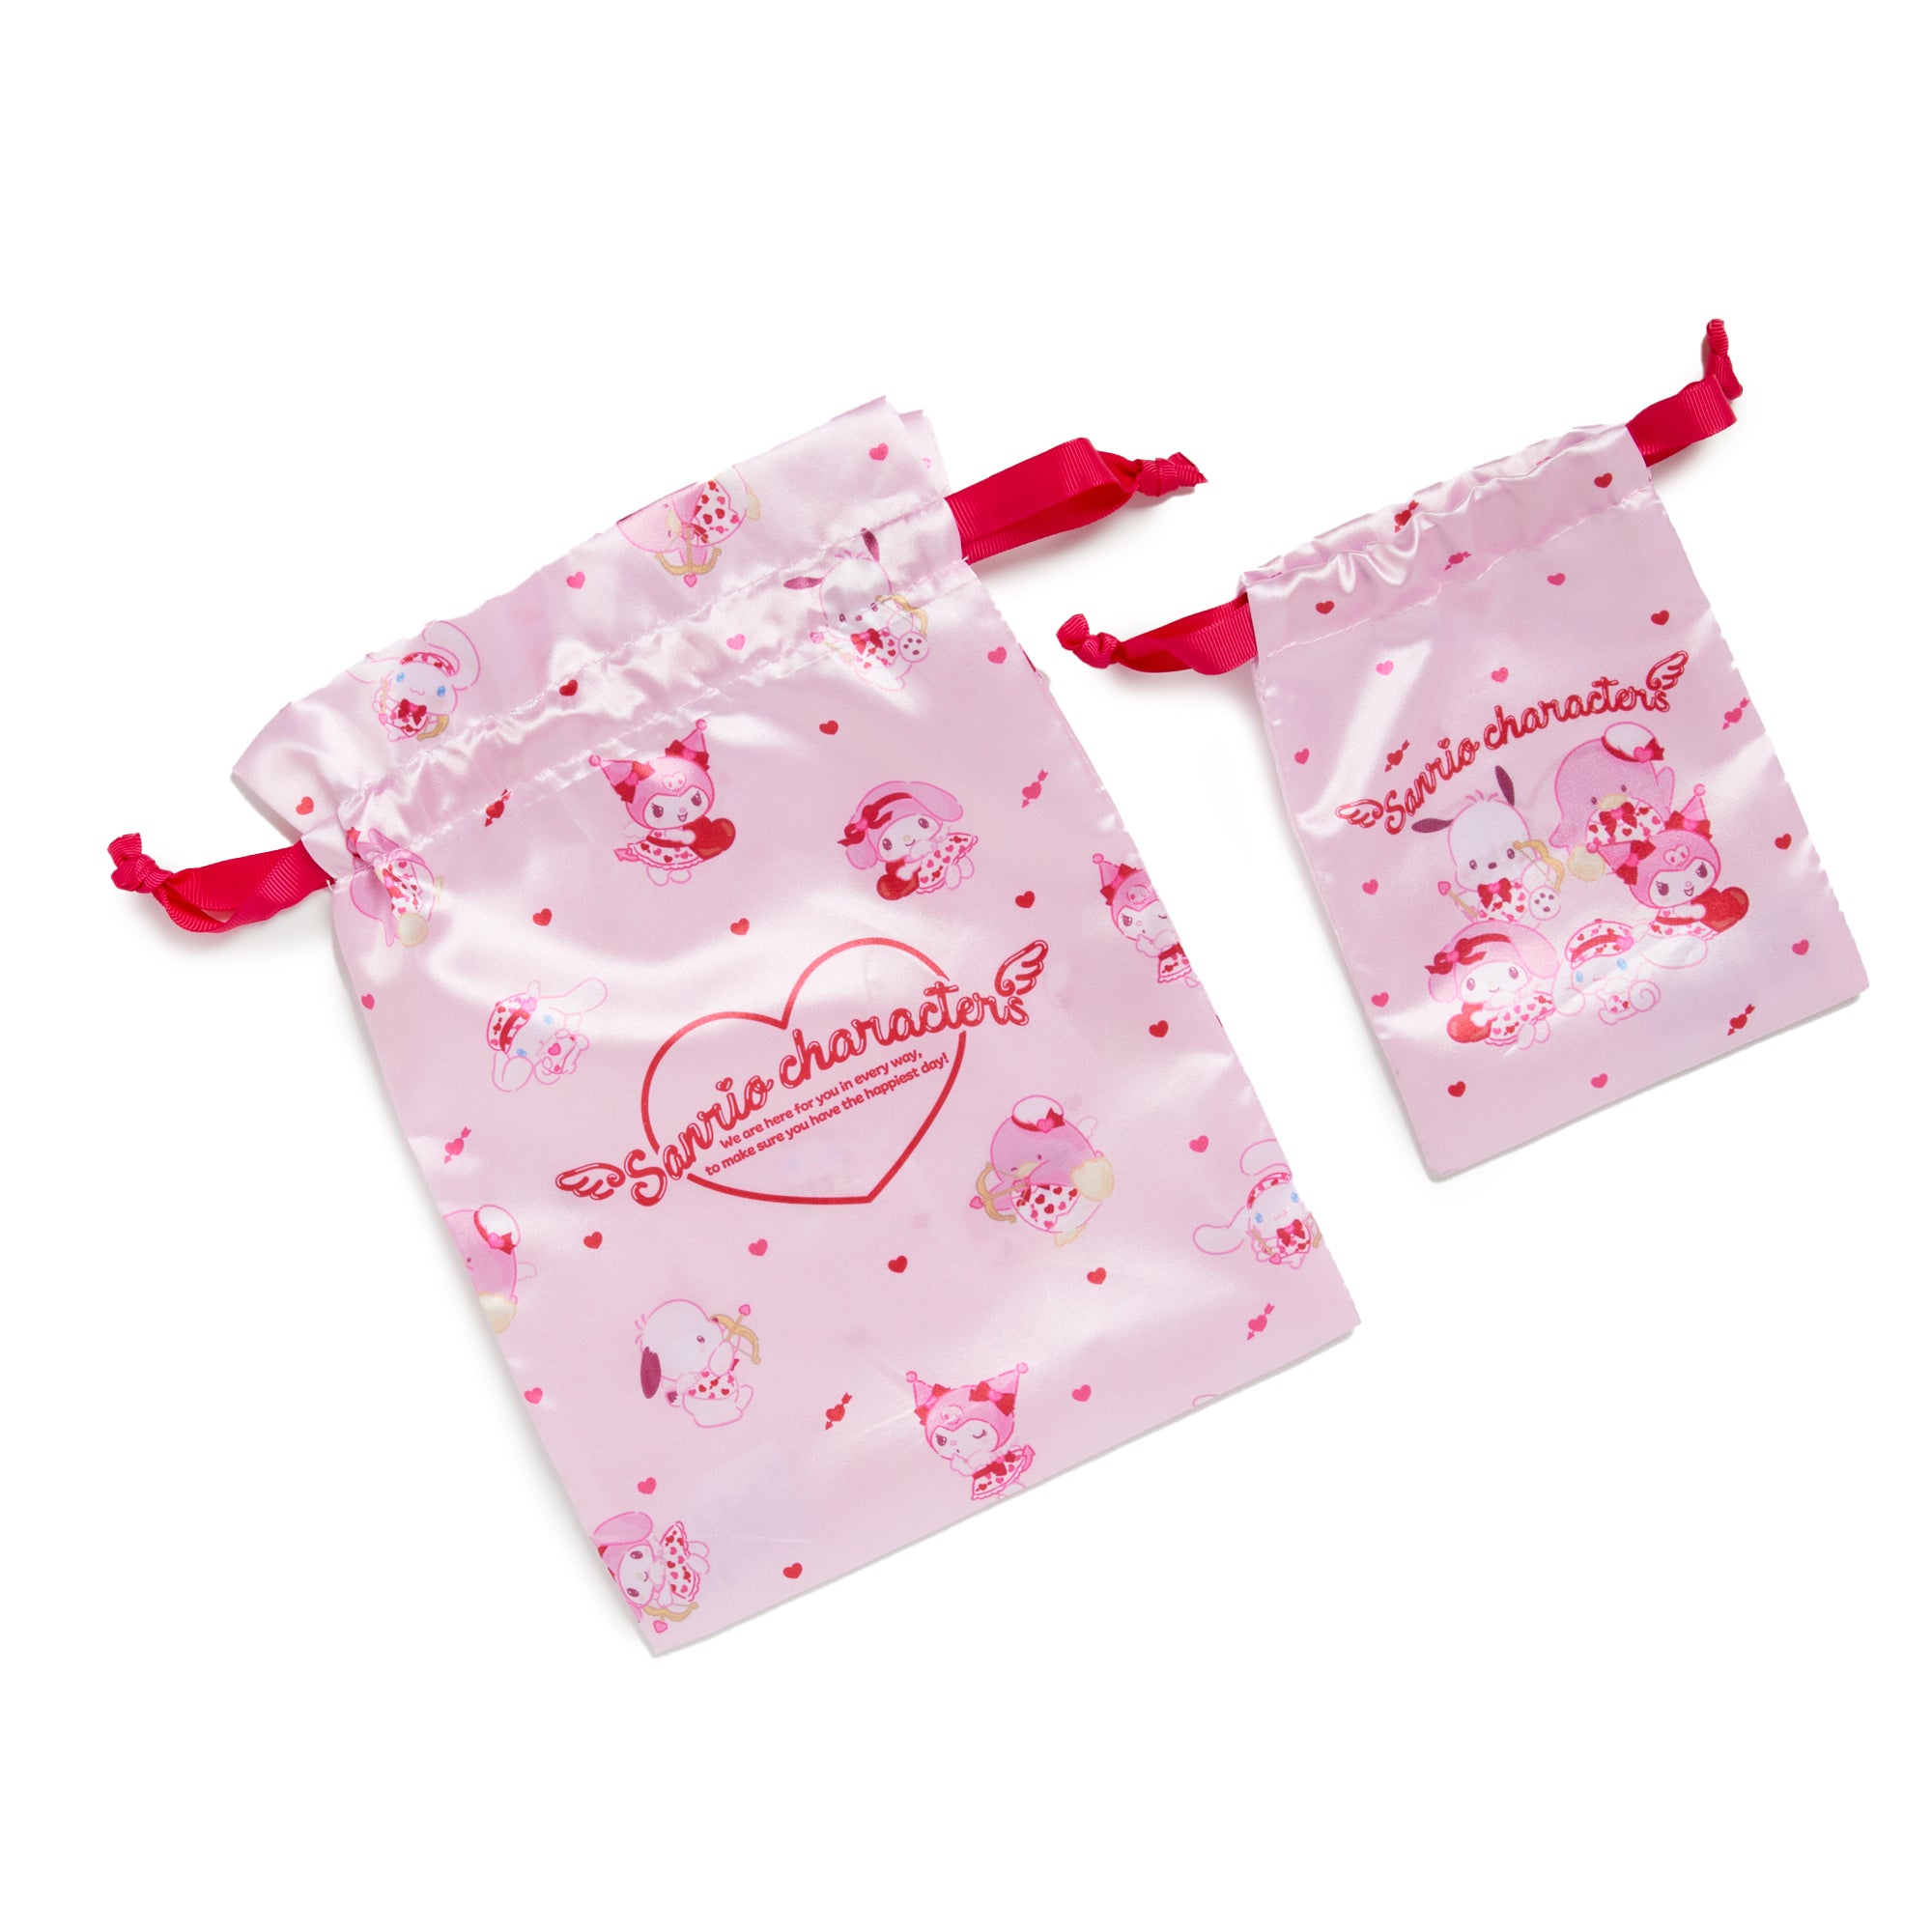 Sanrio Characters Drawstring Bag Set (Cupid Series) Bags Japan Original   